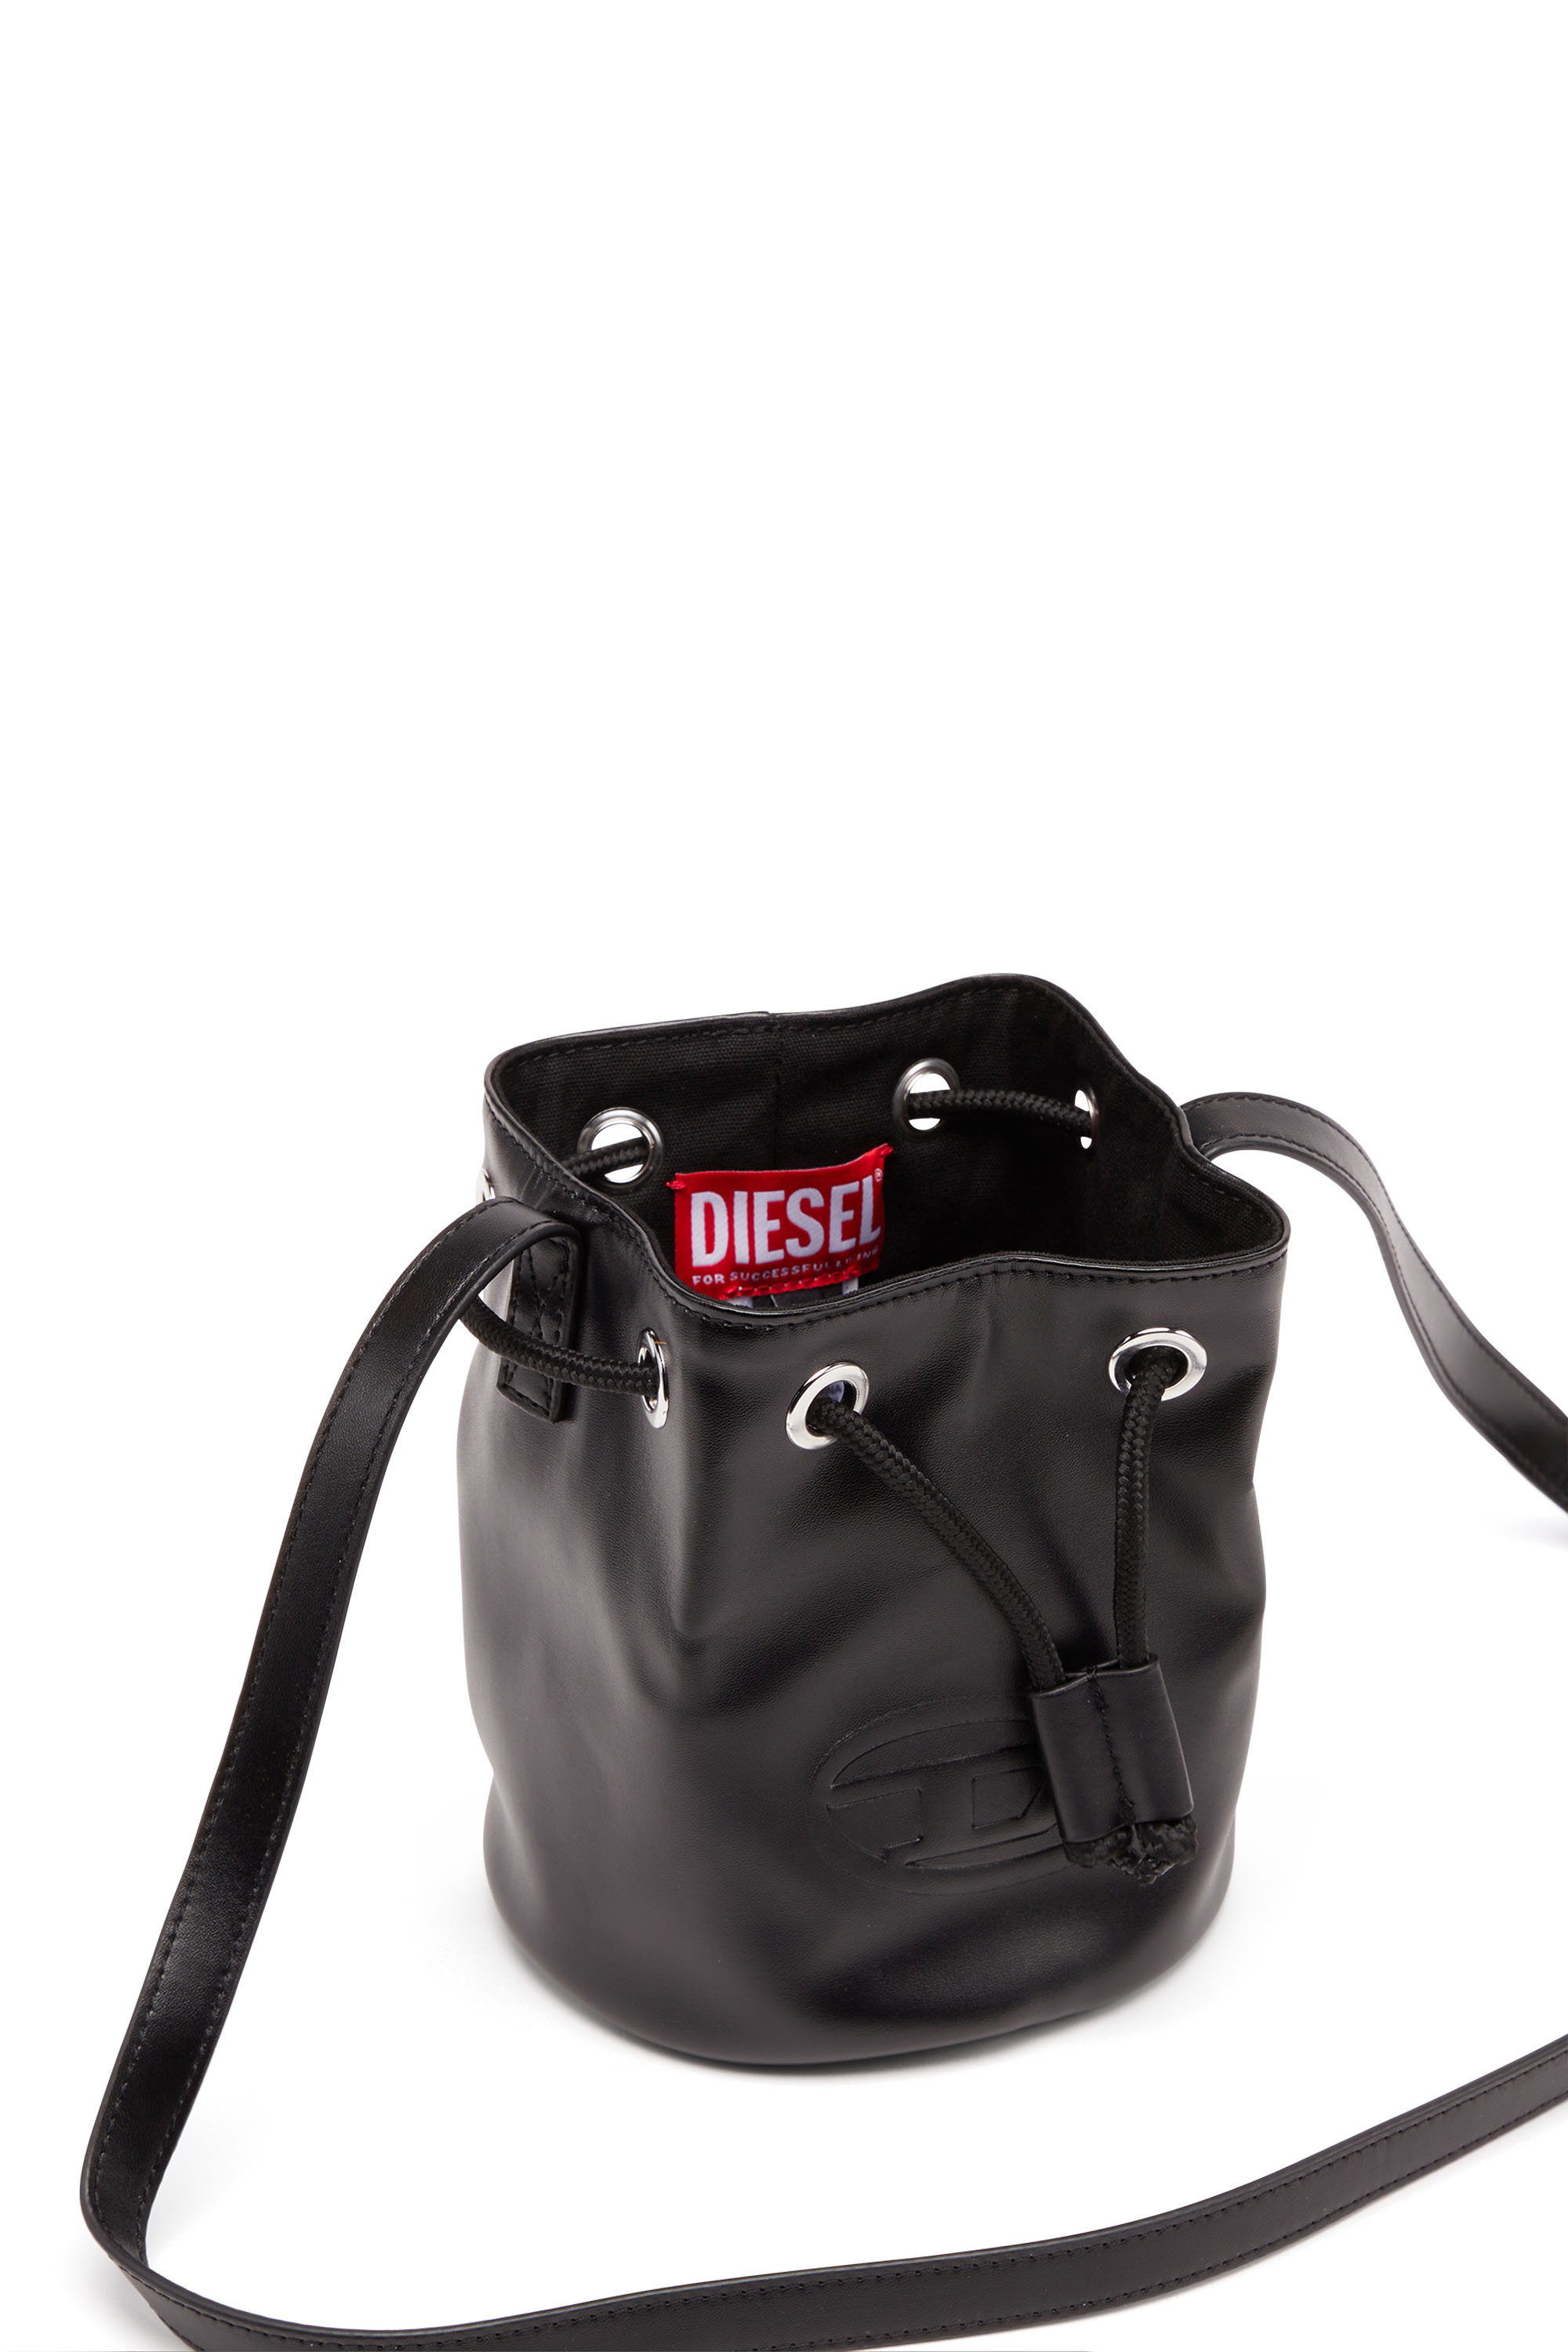 Diesel - WELLTY, Nero - Image 4